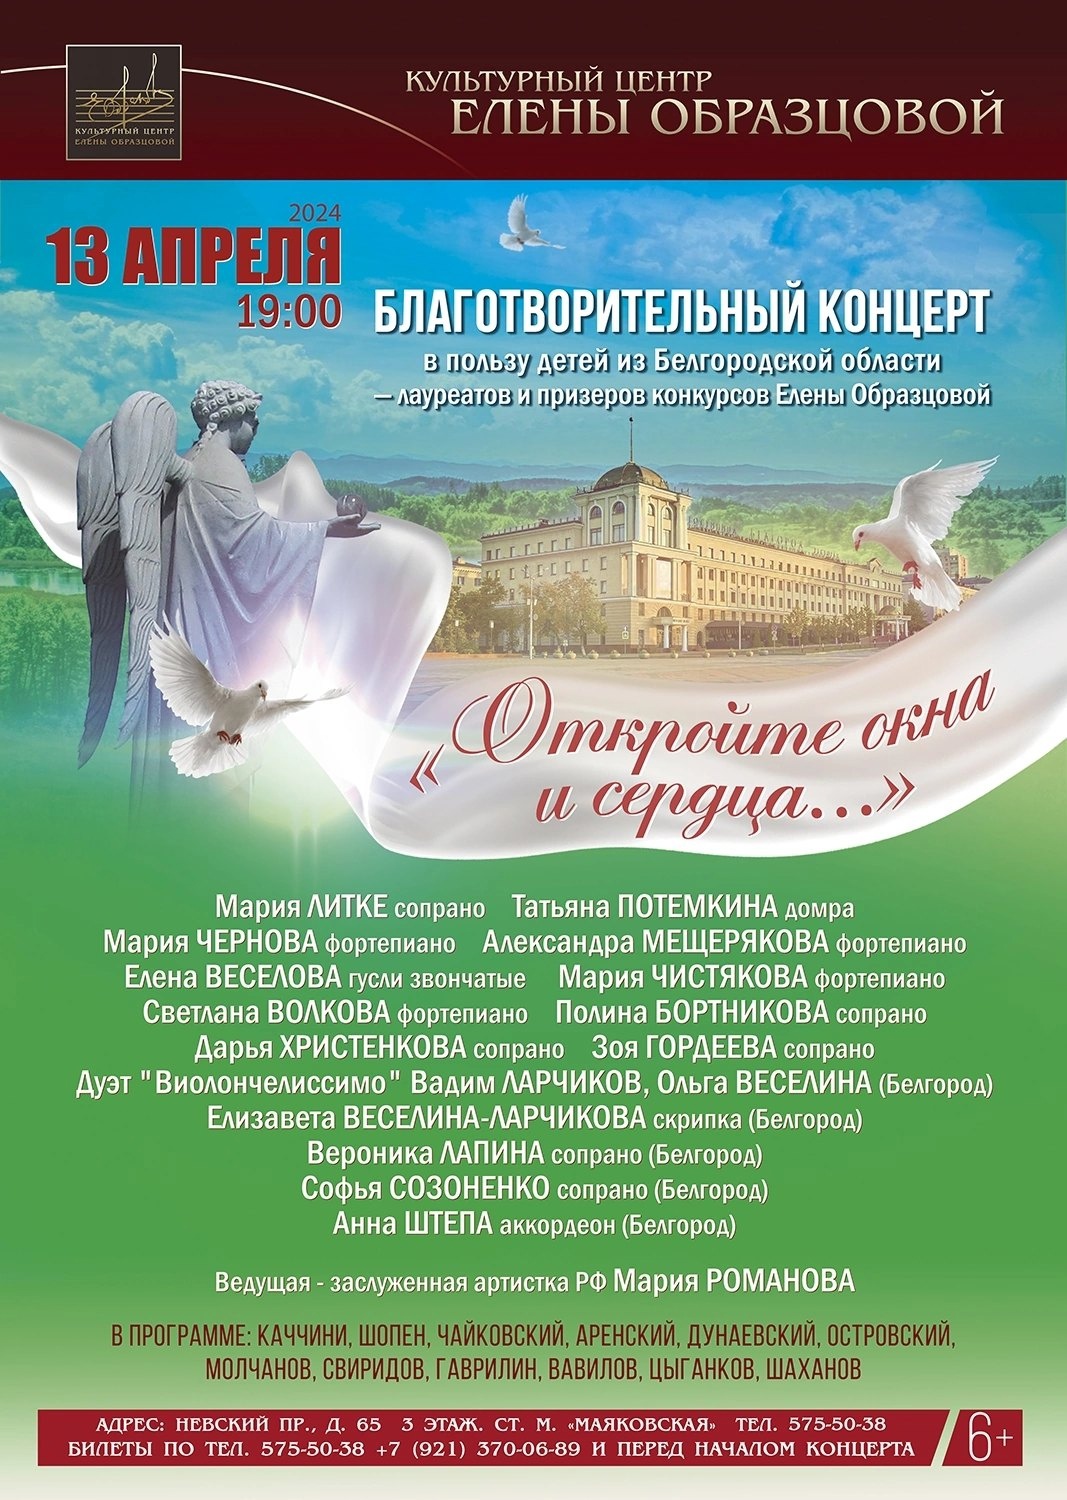 В Санкт-Петербурге пройдет благотворительный концерт в поддержку юных музыкантов из Белгородской области